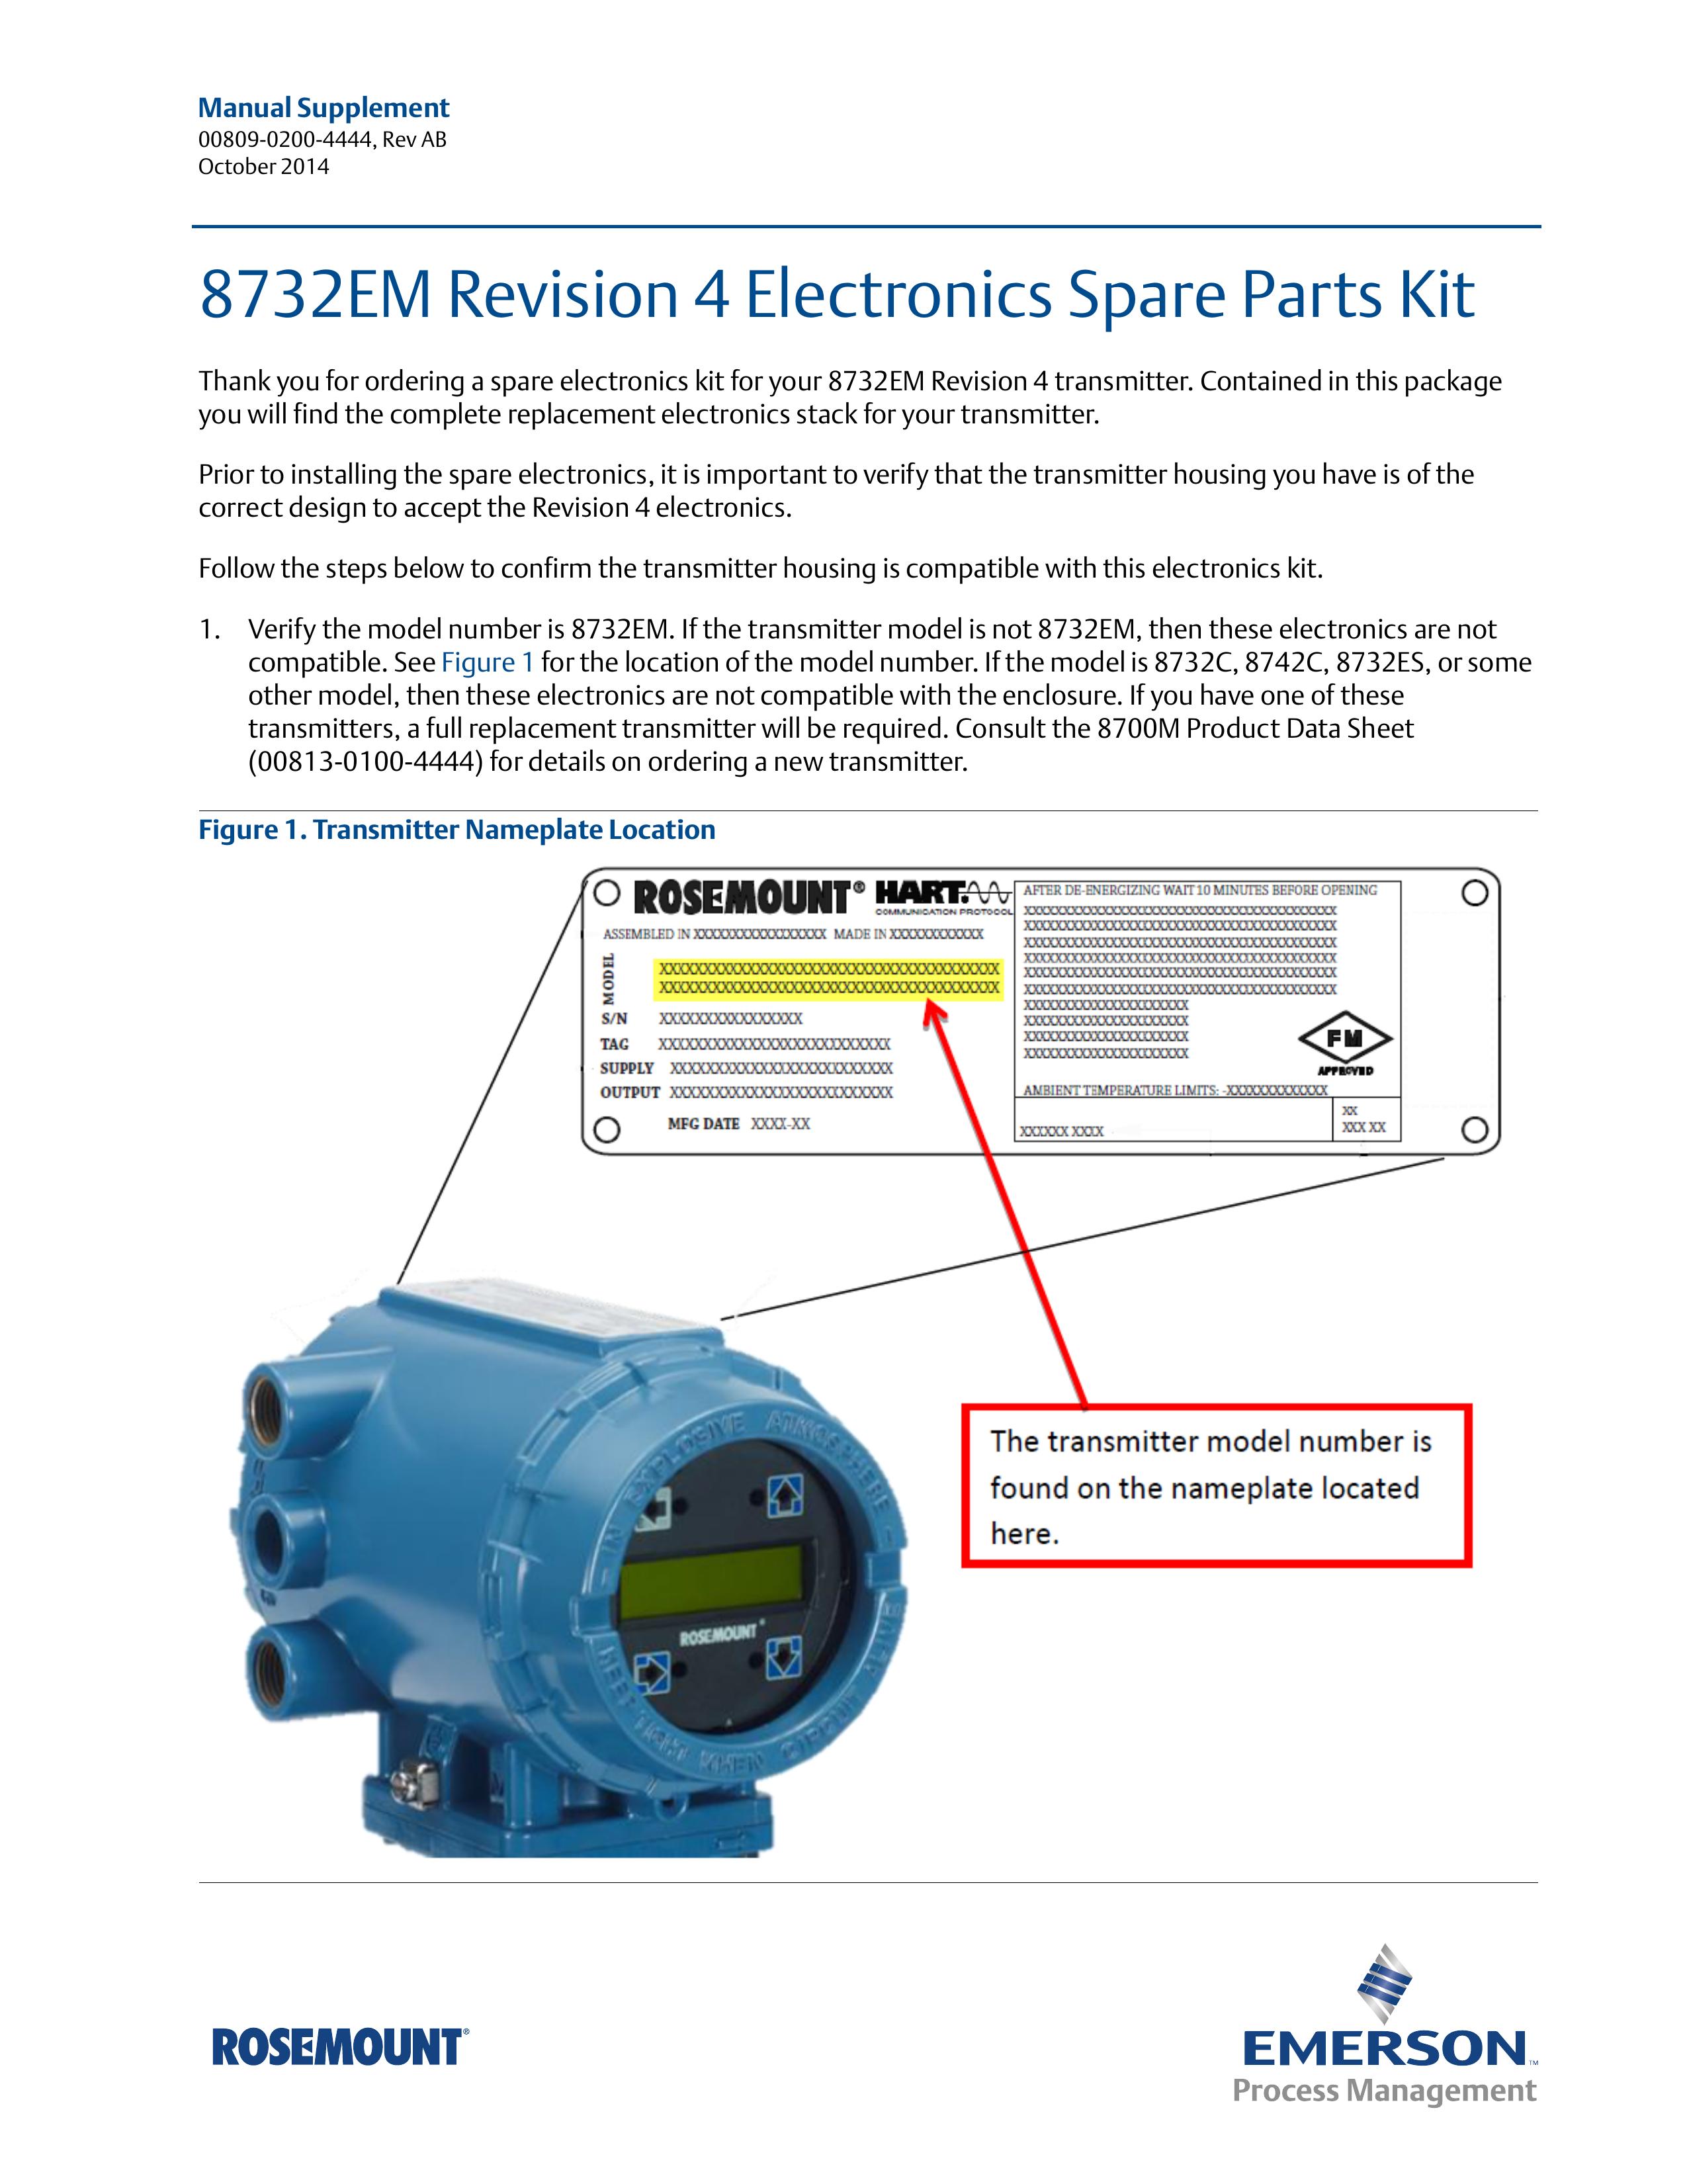 Emerson Process Management Rosemount 8732em Pacemaker User Manual